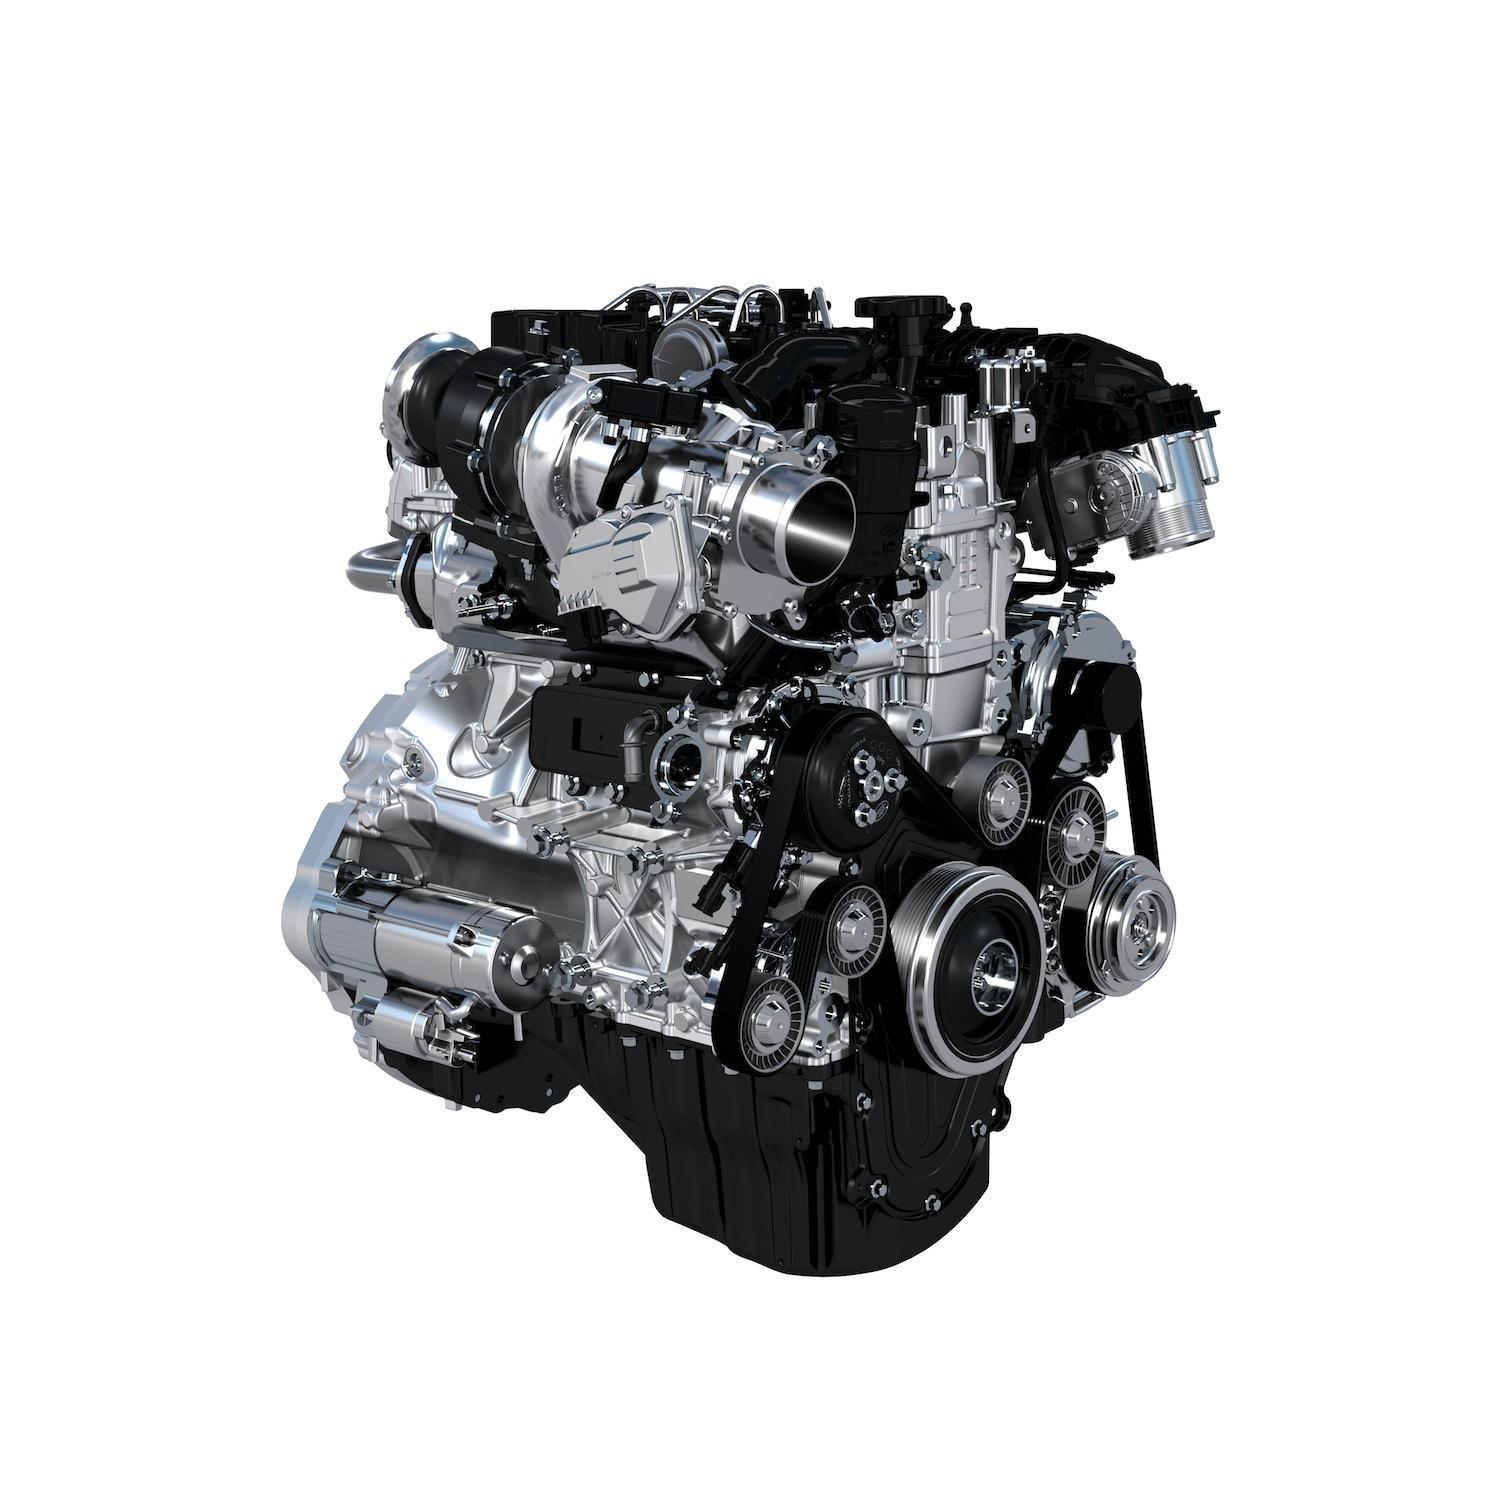 2016 Jaguar XE engine